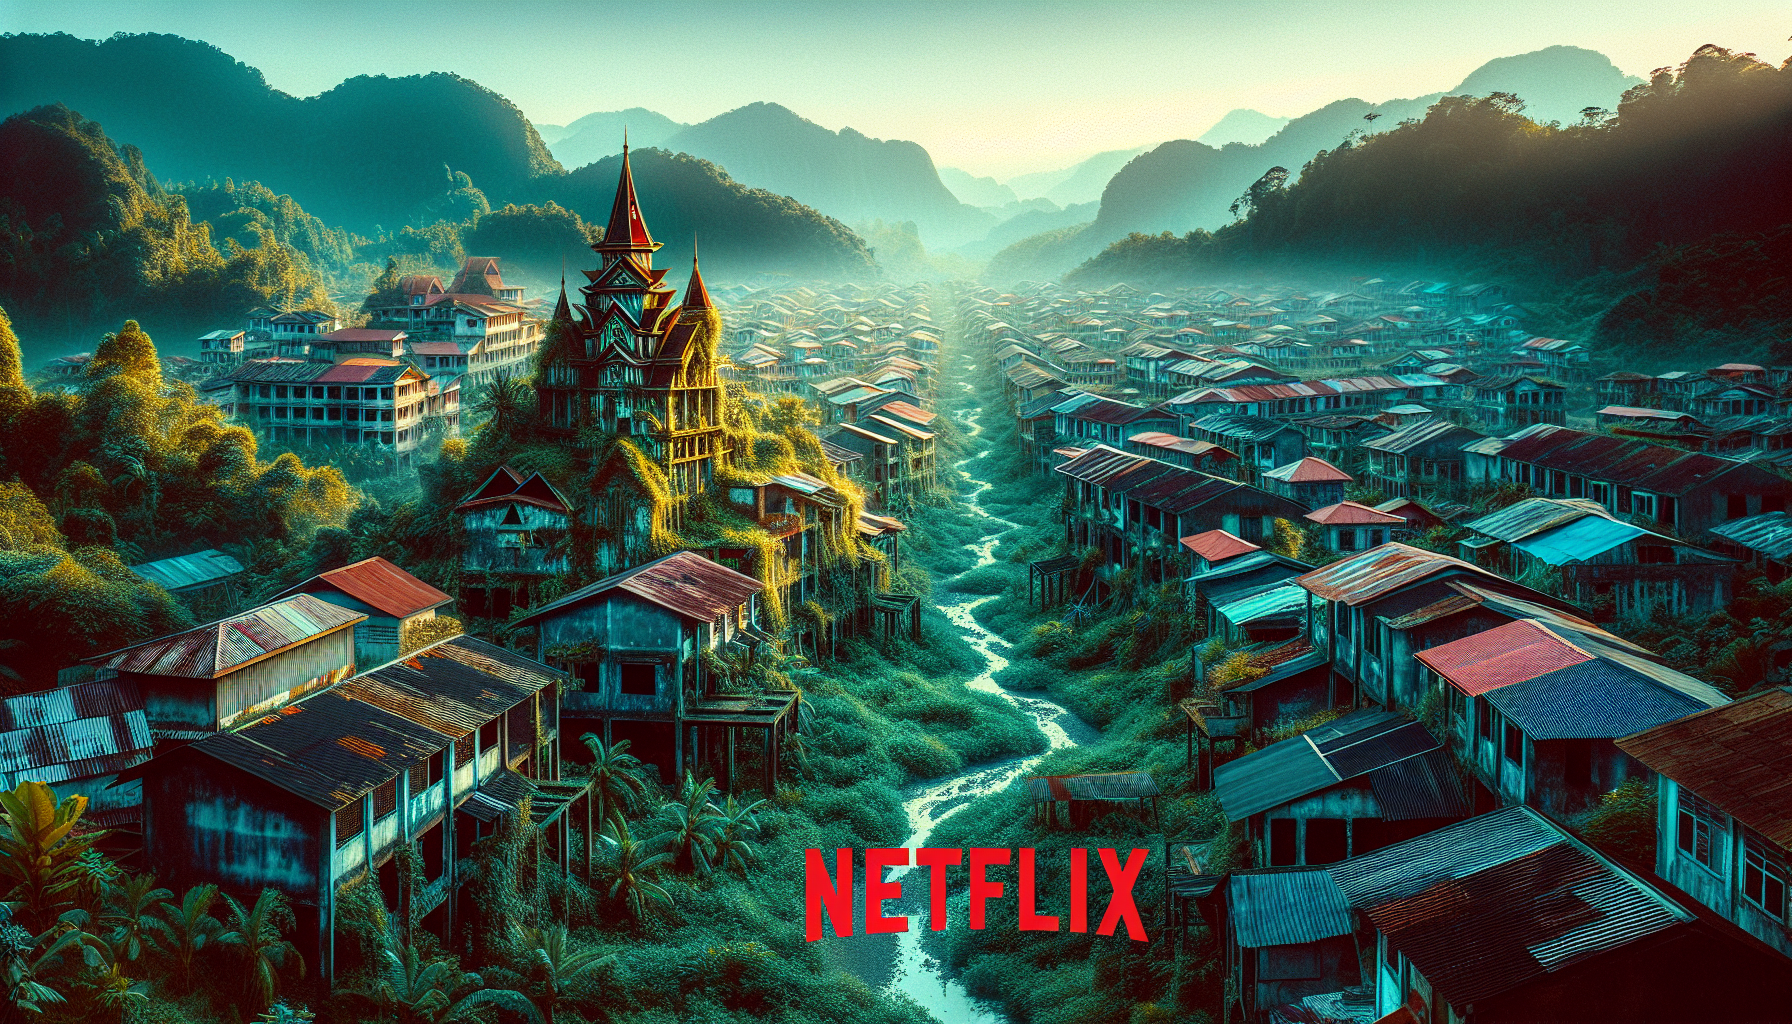 Descubra el misterio de la ciudad fantasma de Malasia valorada en 100.000 millones de dólares y su nueva fama como uno de los principales lugares de rodaje de Netflix.